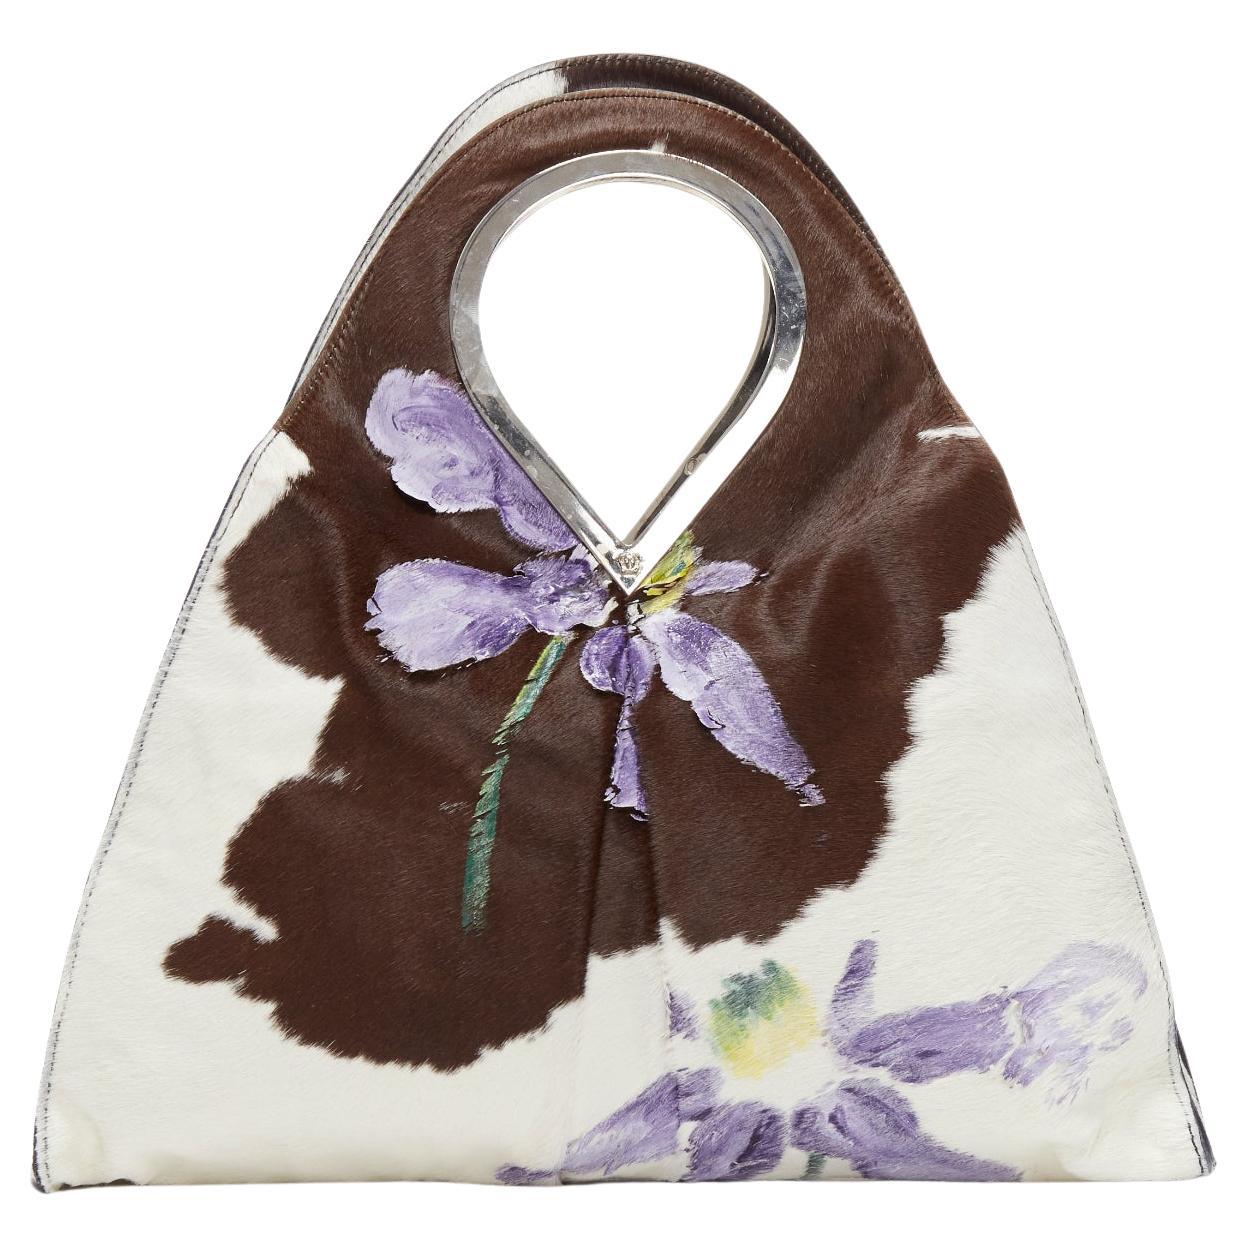 GIANNI VERSACE 1999 Runway handpainted floral brown cow print horsehair bag For Sale